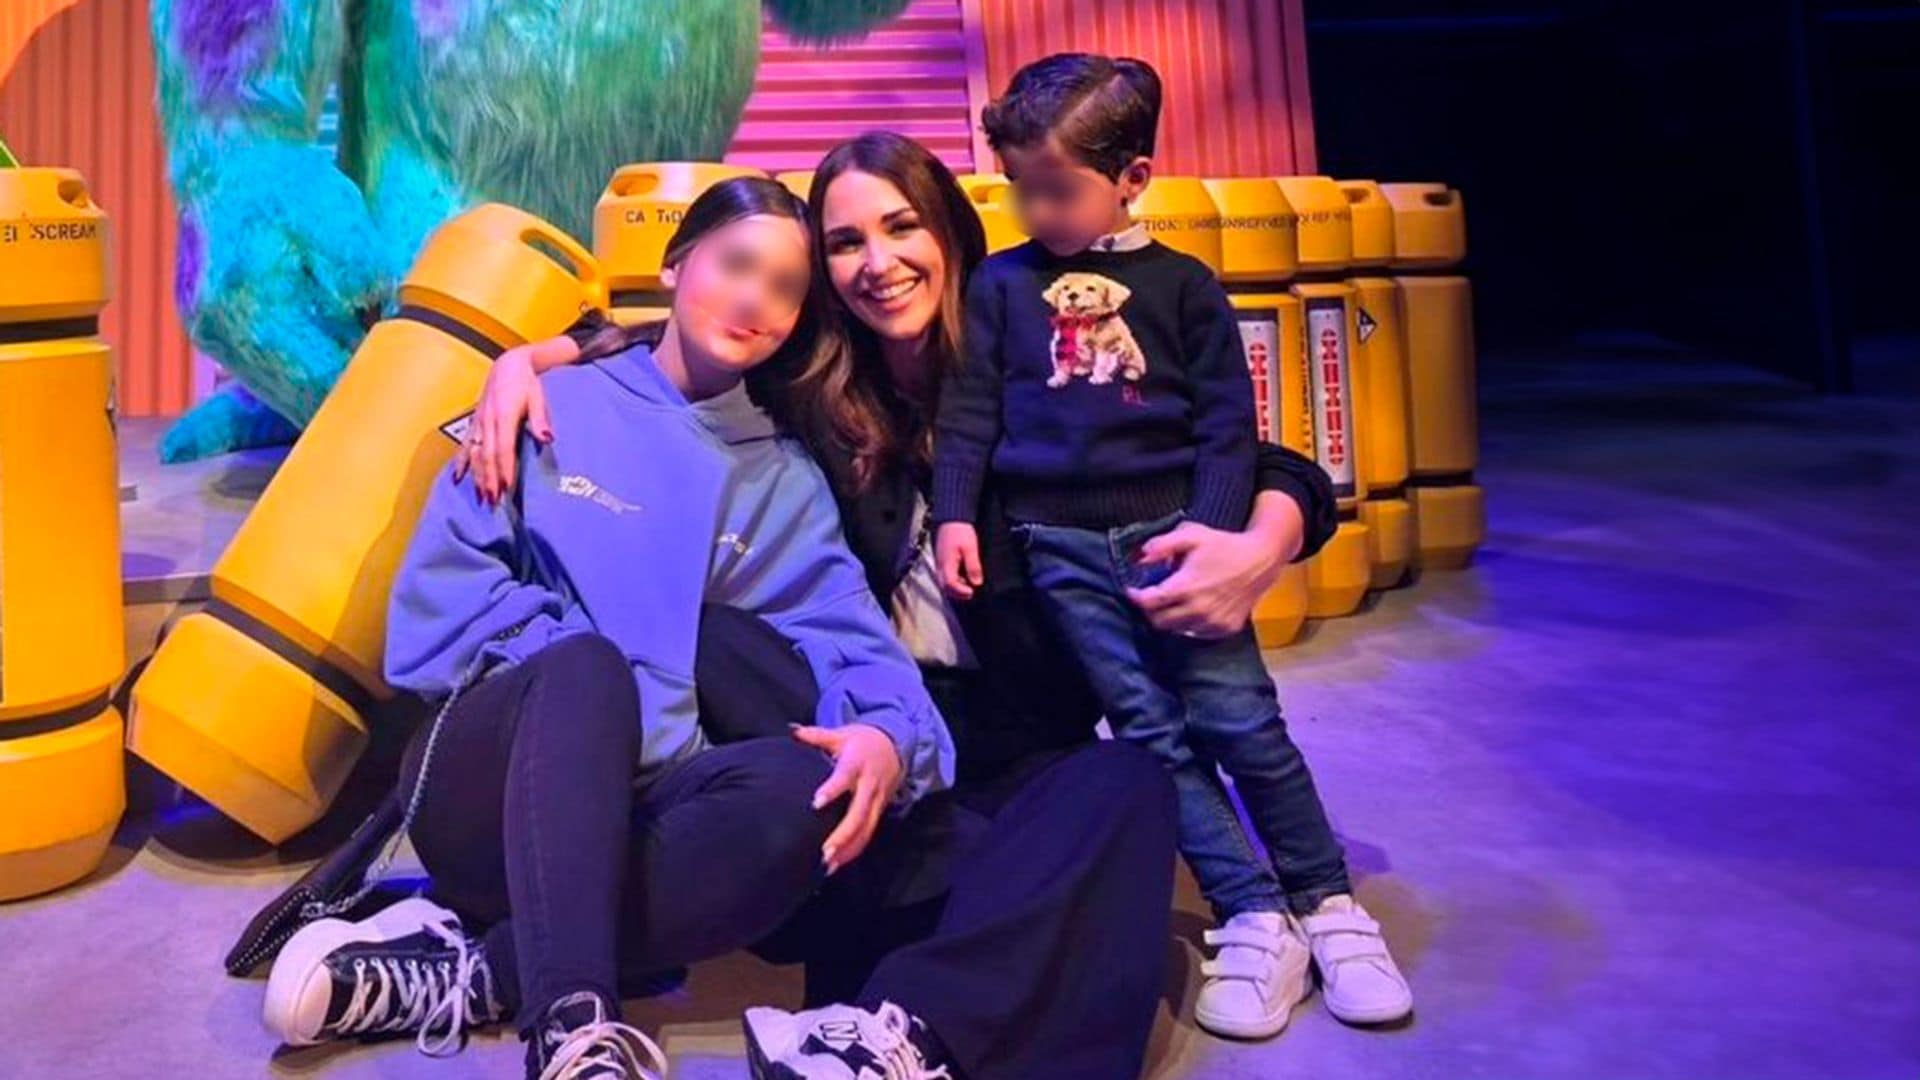 La divertida escapada familiar de Paula Echevarría y Miguel Torres a Disneyland París llena de magia e ilusión